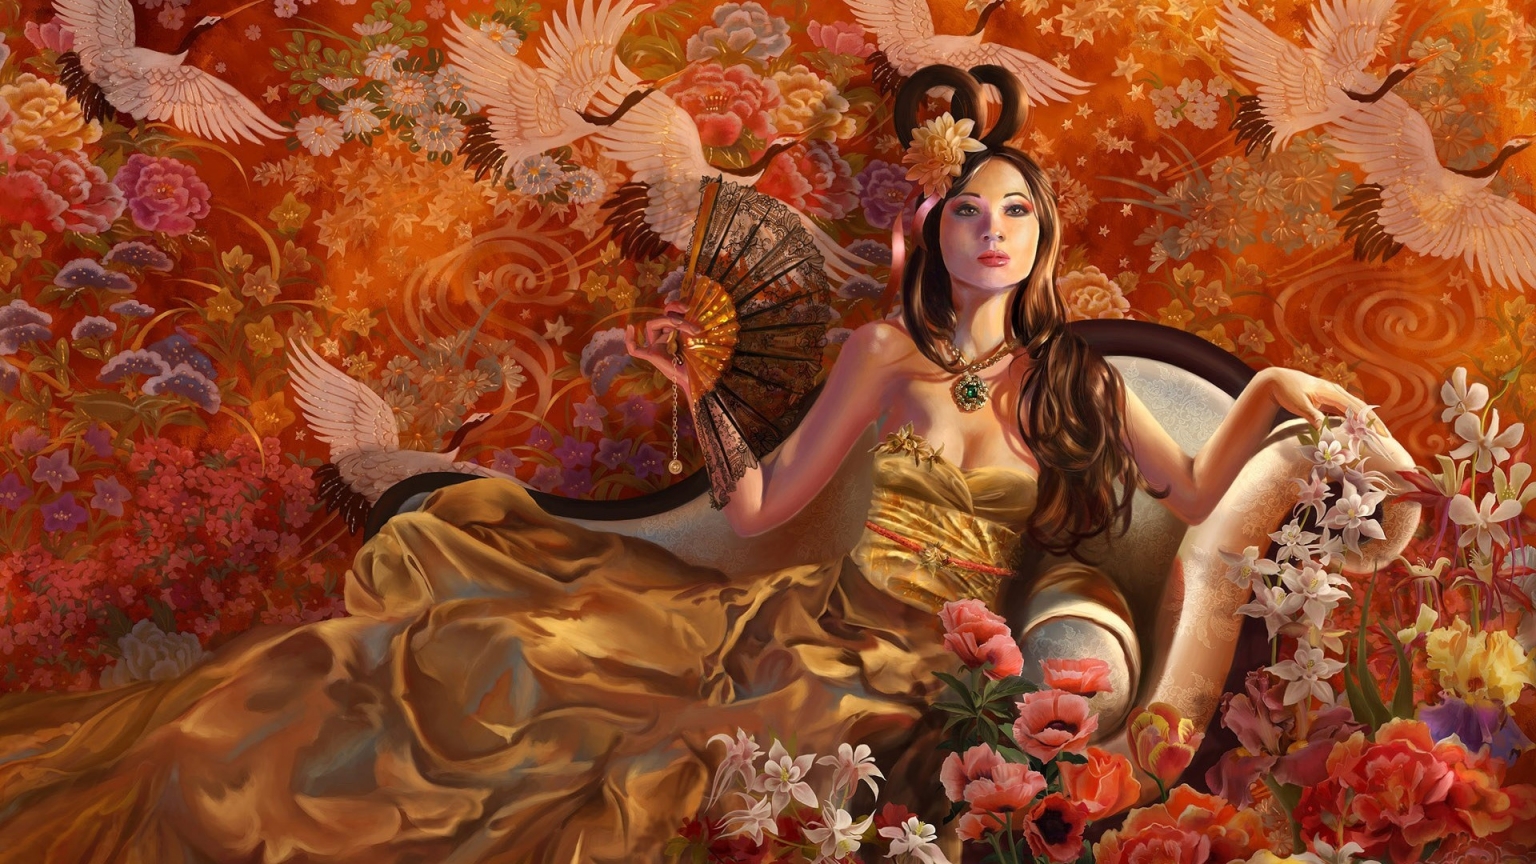 Fantasy Girl Autumn for 1536 x 864 HDTV resolution